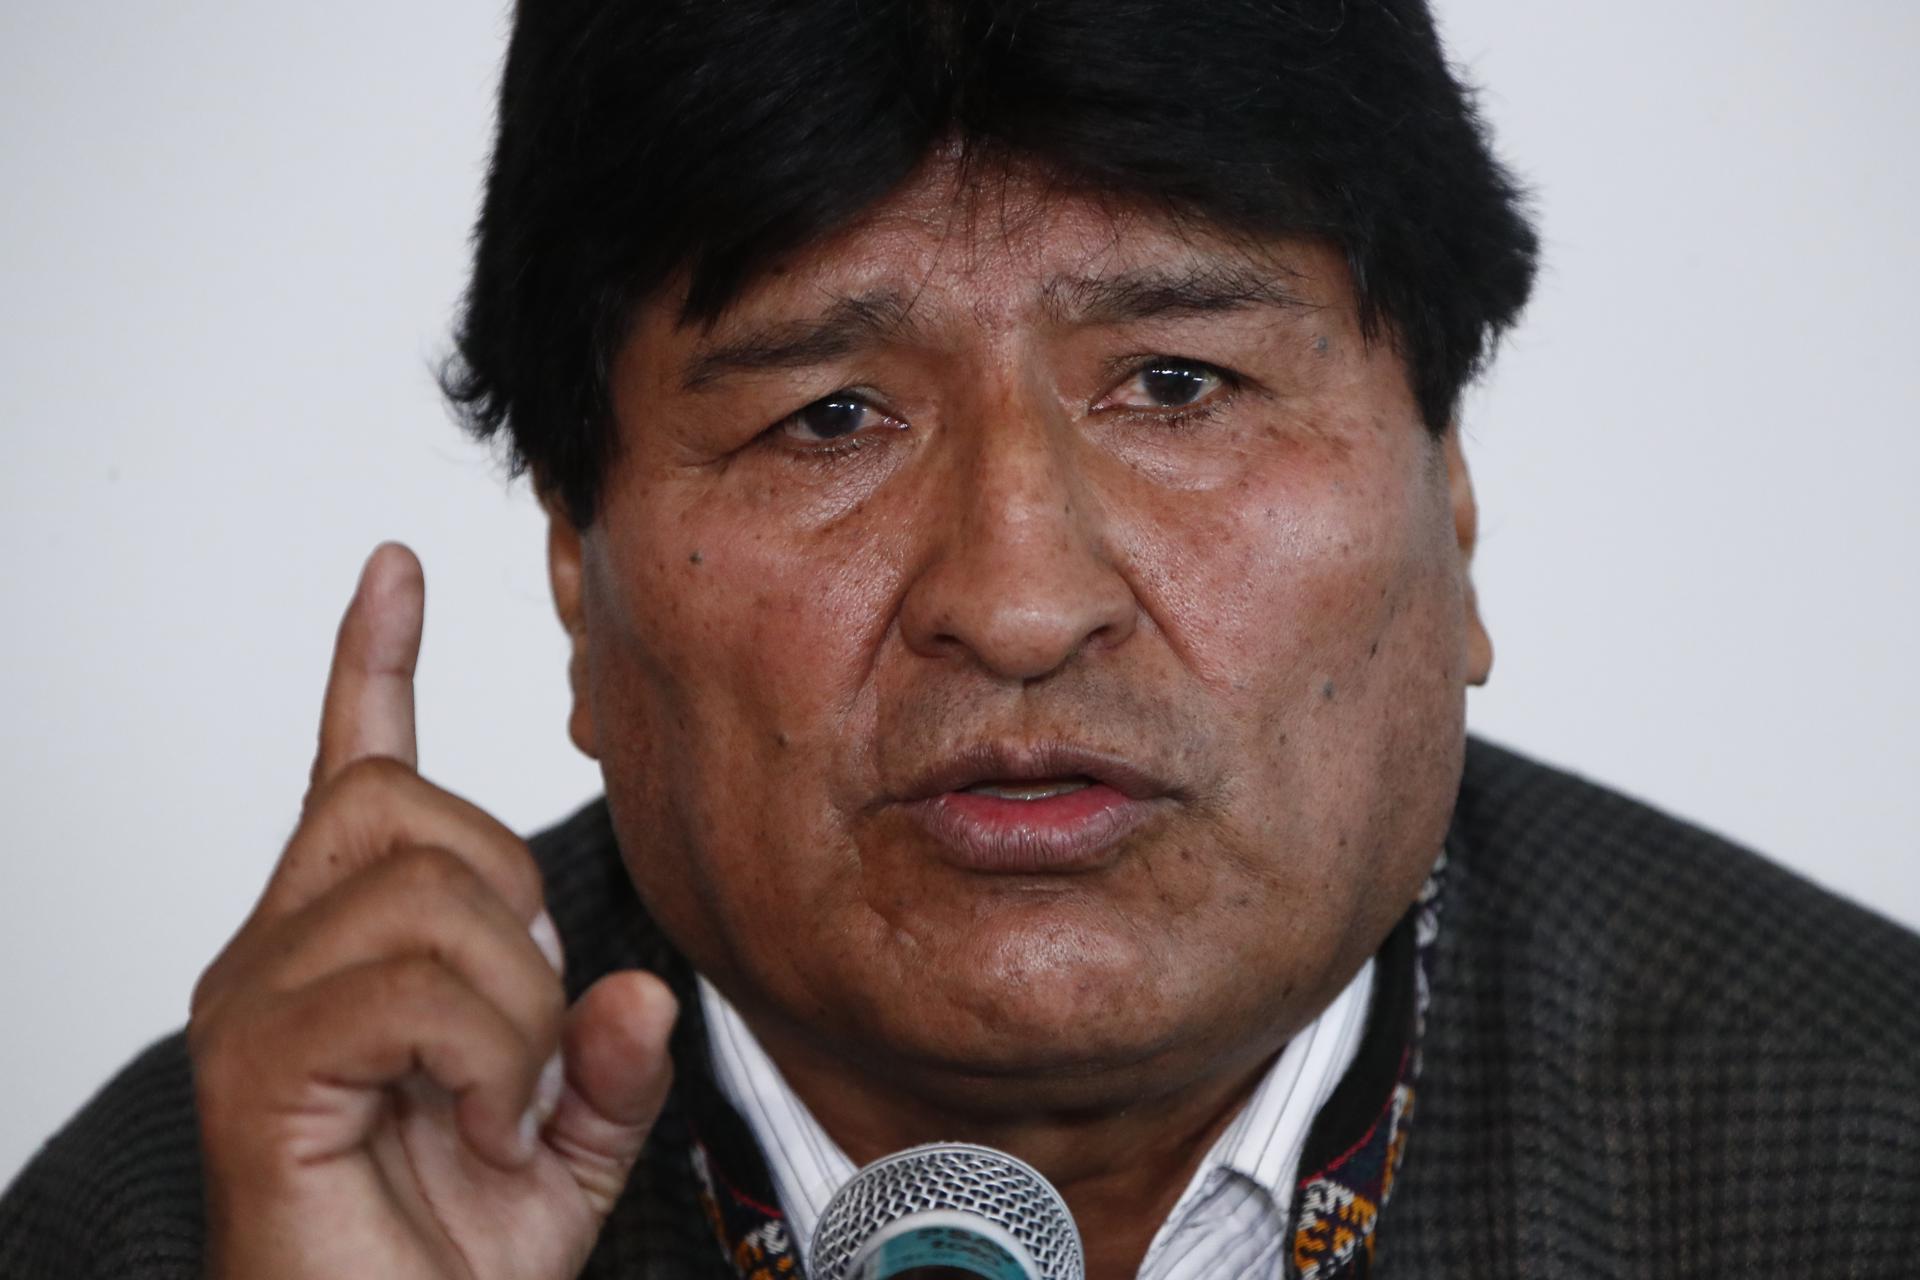 El expresidente de Bolivia Evo Morales, en una fotografía de archivo. EFE/ José Méndez